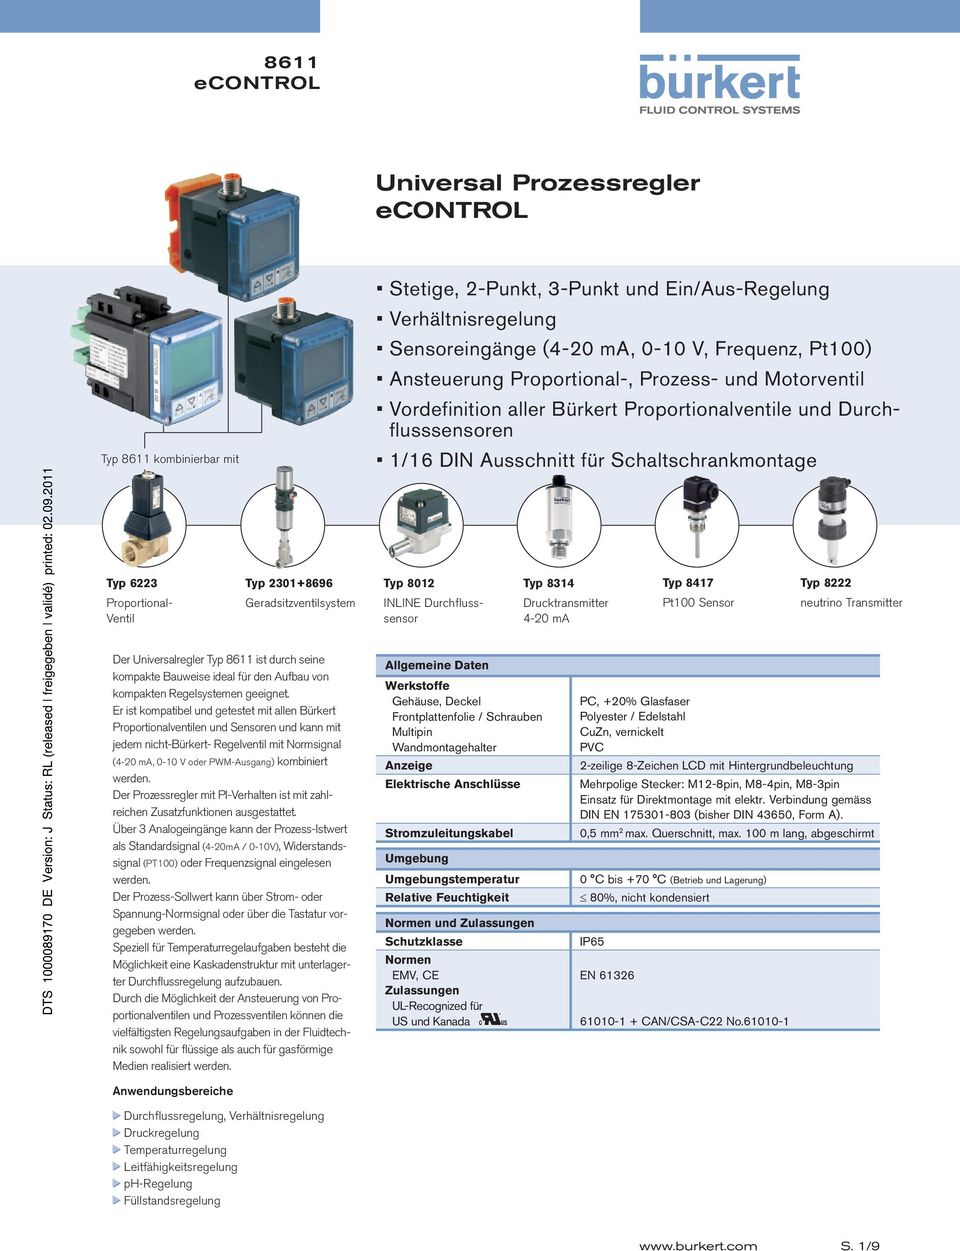 Geradsitzventilsystem INLINE sensor Drucktransmitter Pt100 Sensor neutrino Transmitter Der Universalregler Typ 8611 ist durch seine kompakte Bauweise ideal für den Aufbau von kompakten Regelsystemen